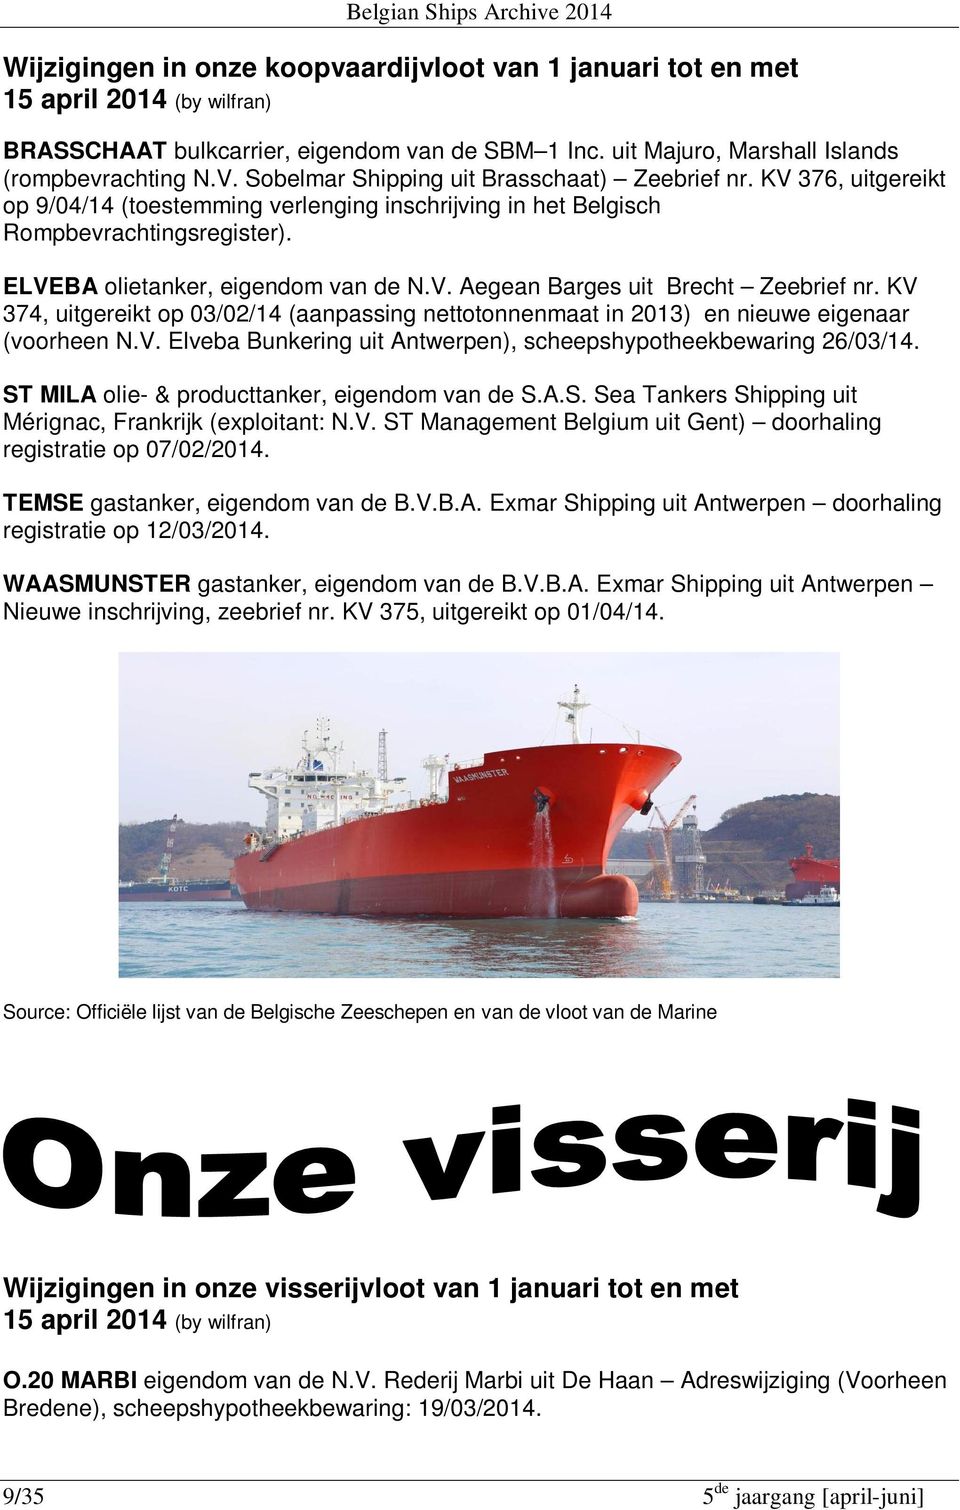 KV 374, uitgereikt op 03/02/14 (aanpassing nettotonnenmaat in 2013) en nieuwe eigenaar (voorheen N.V. Elveba Bunkering uit Antwerpen), scheepshypotheekbewaring 26/03/14.